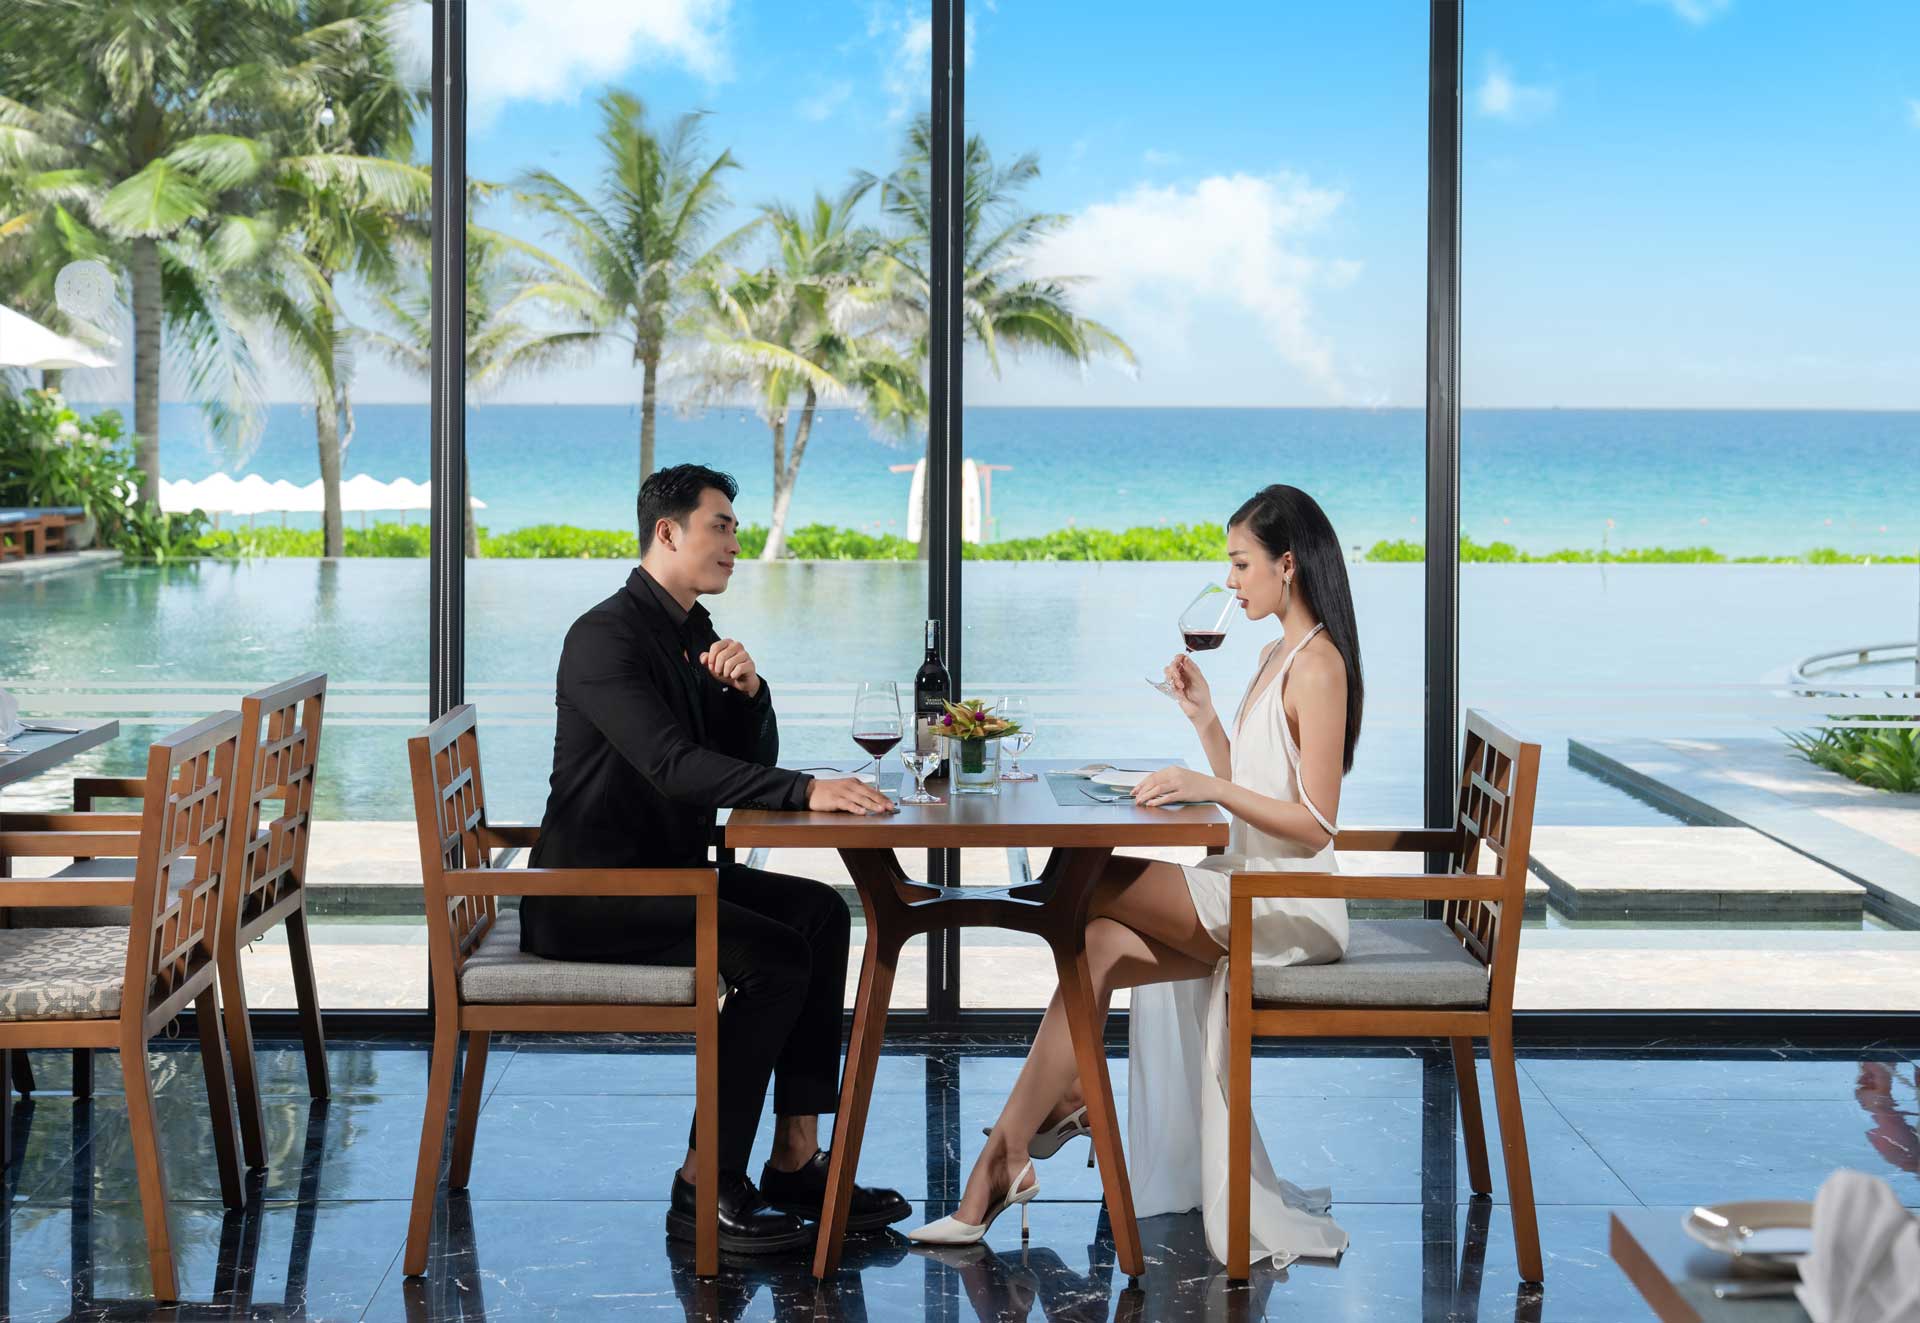 1 đôi nam nữ đang ngồi ăn uống tại nhà hàng cạnh hồ bơi